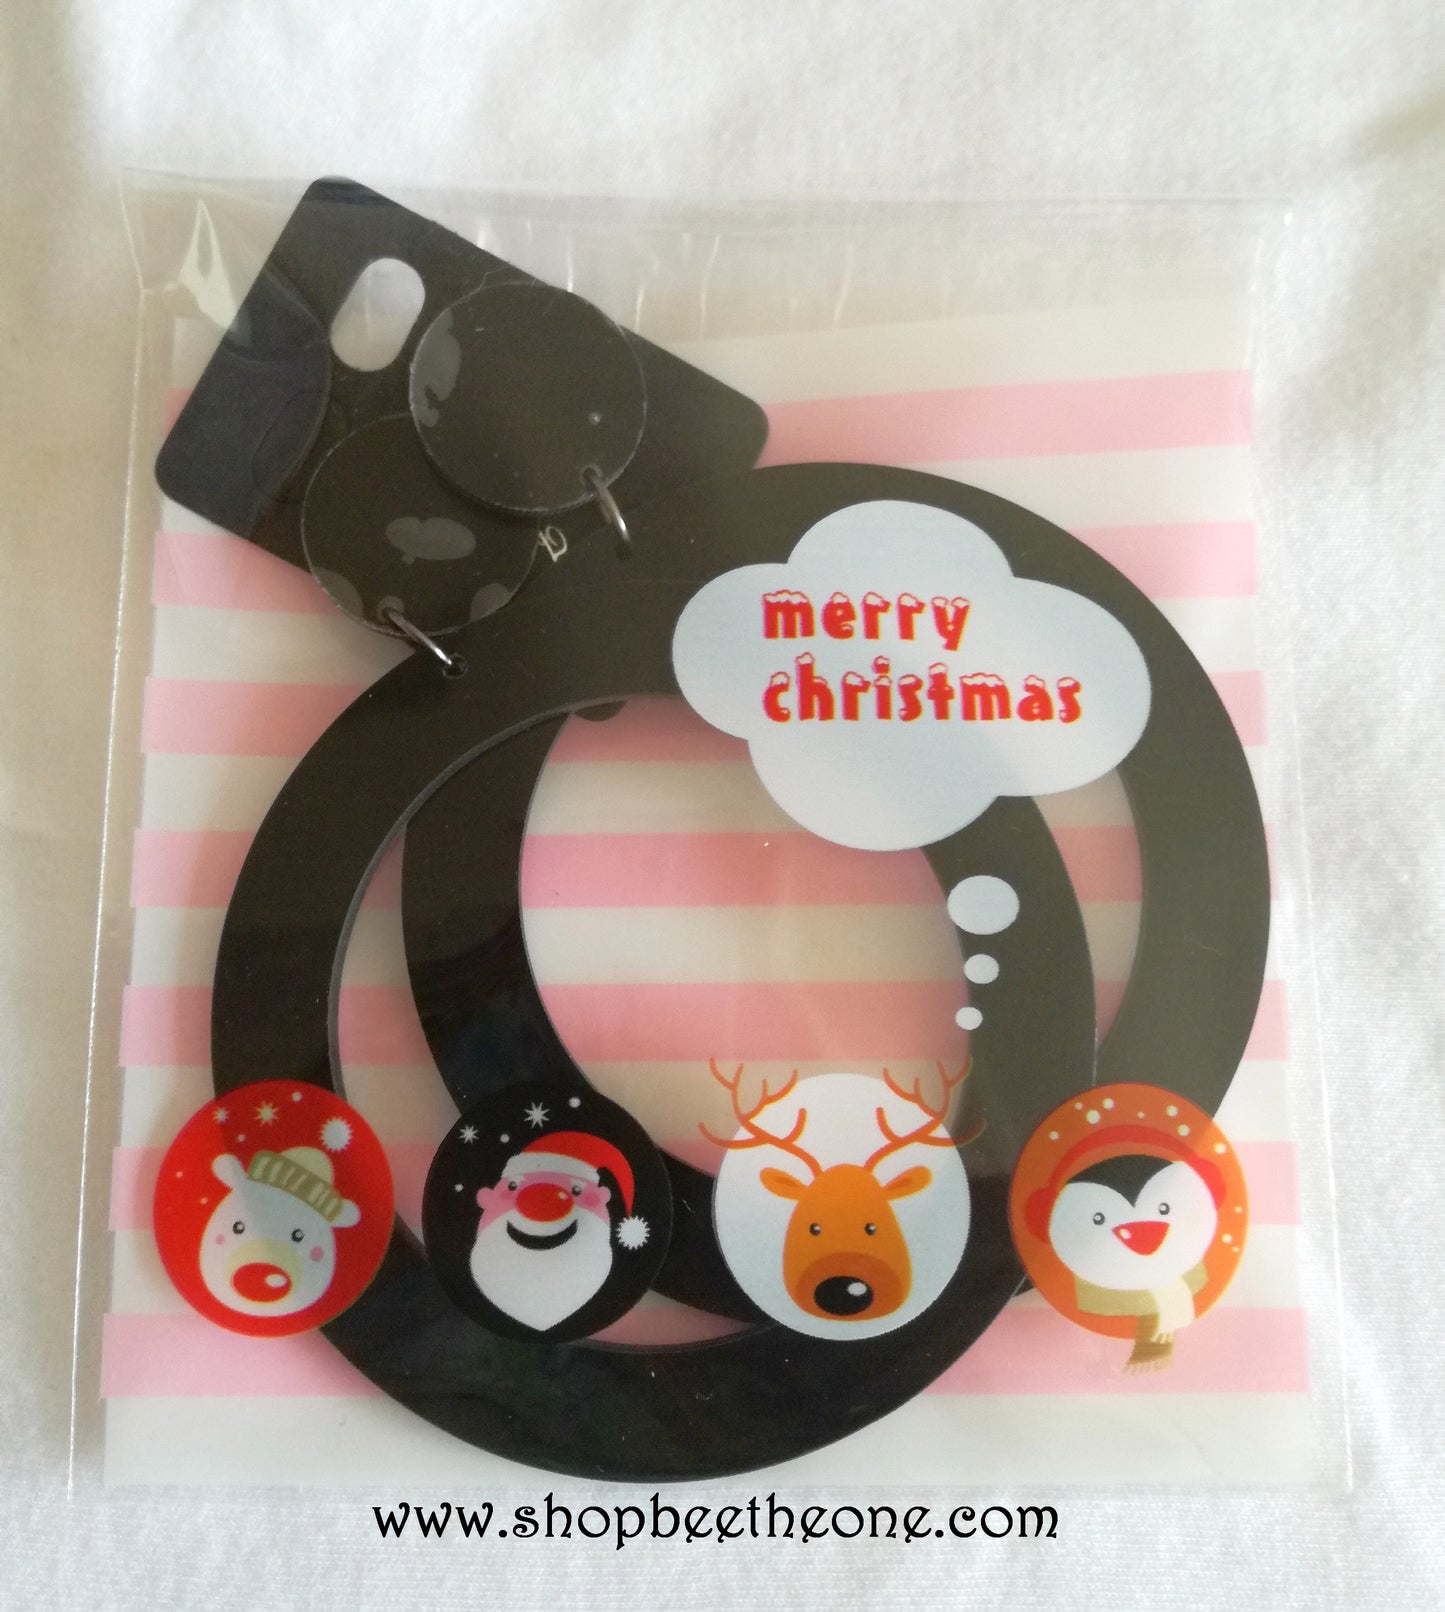 Sachet emballage auto-adhésif "Merry Christmas" pour petits cadeaux, biscuits... - 10 x 10 cm - rayures roses